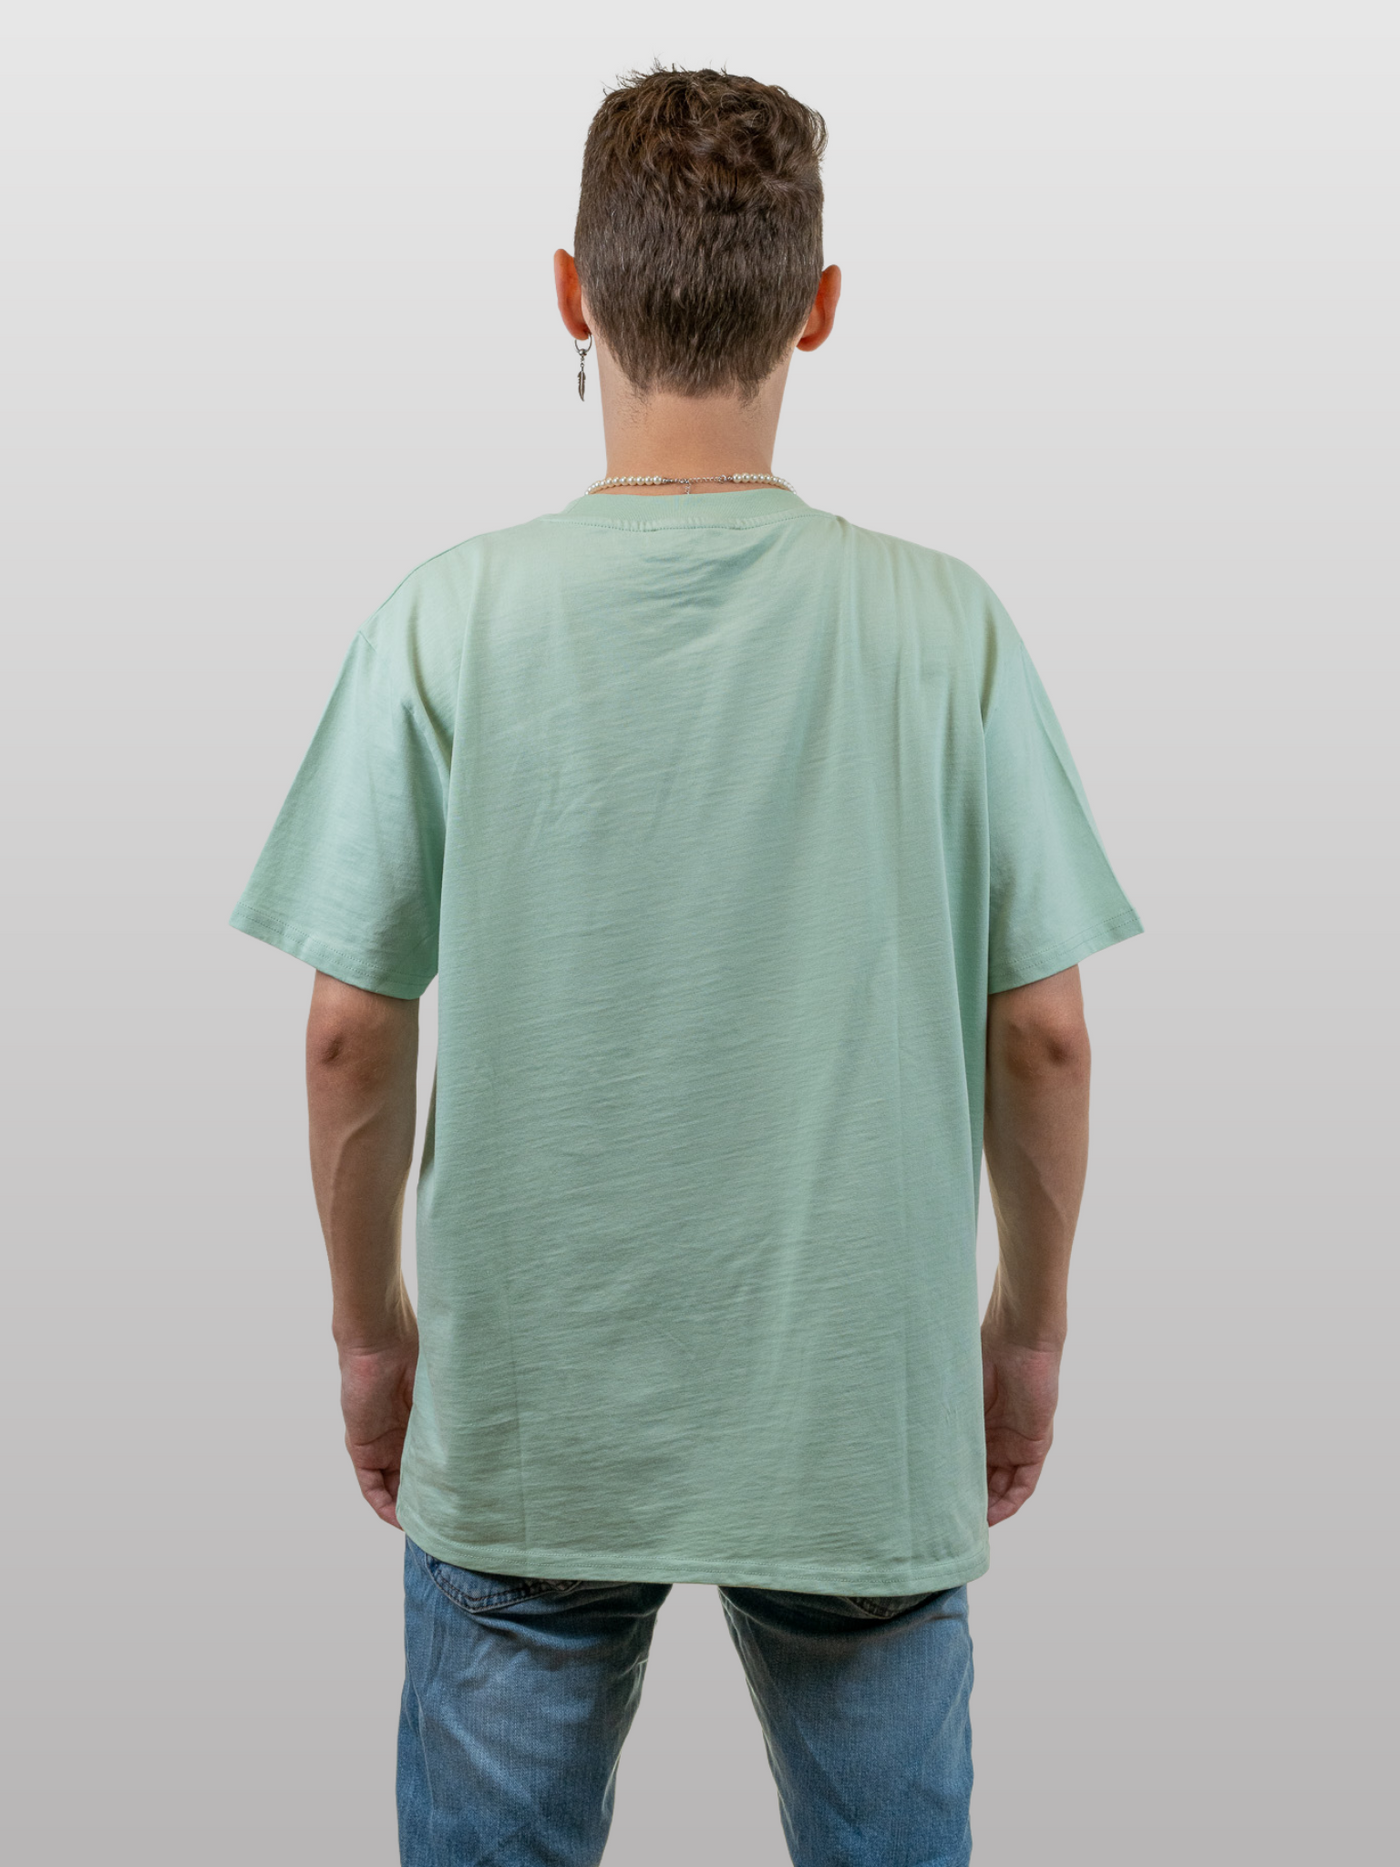 Unisex Oversized T-Shirt Cat Band Grayed Jade